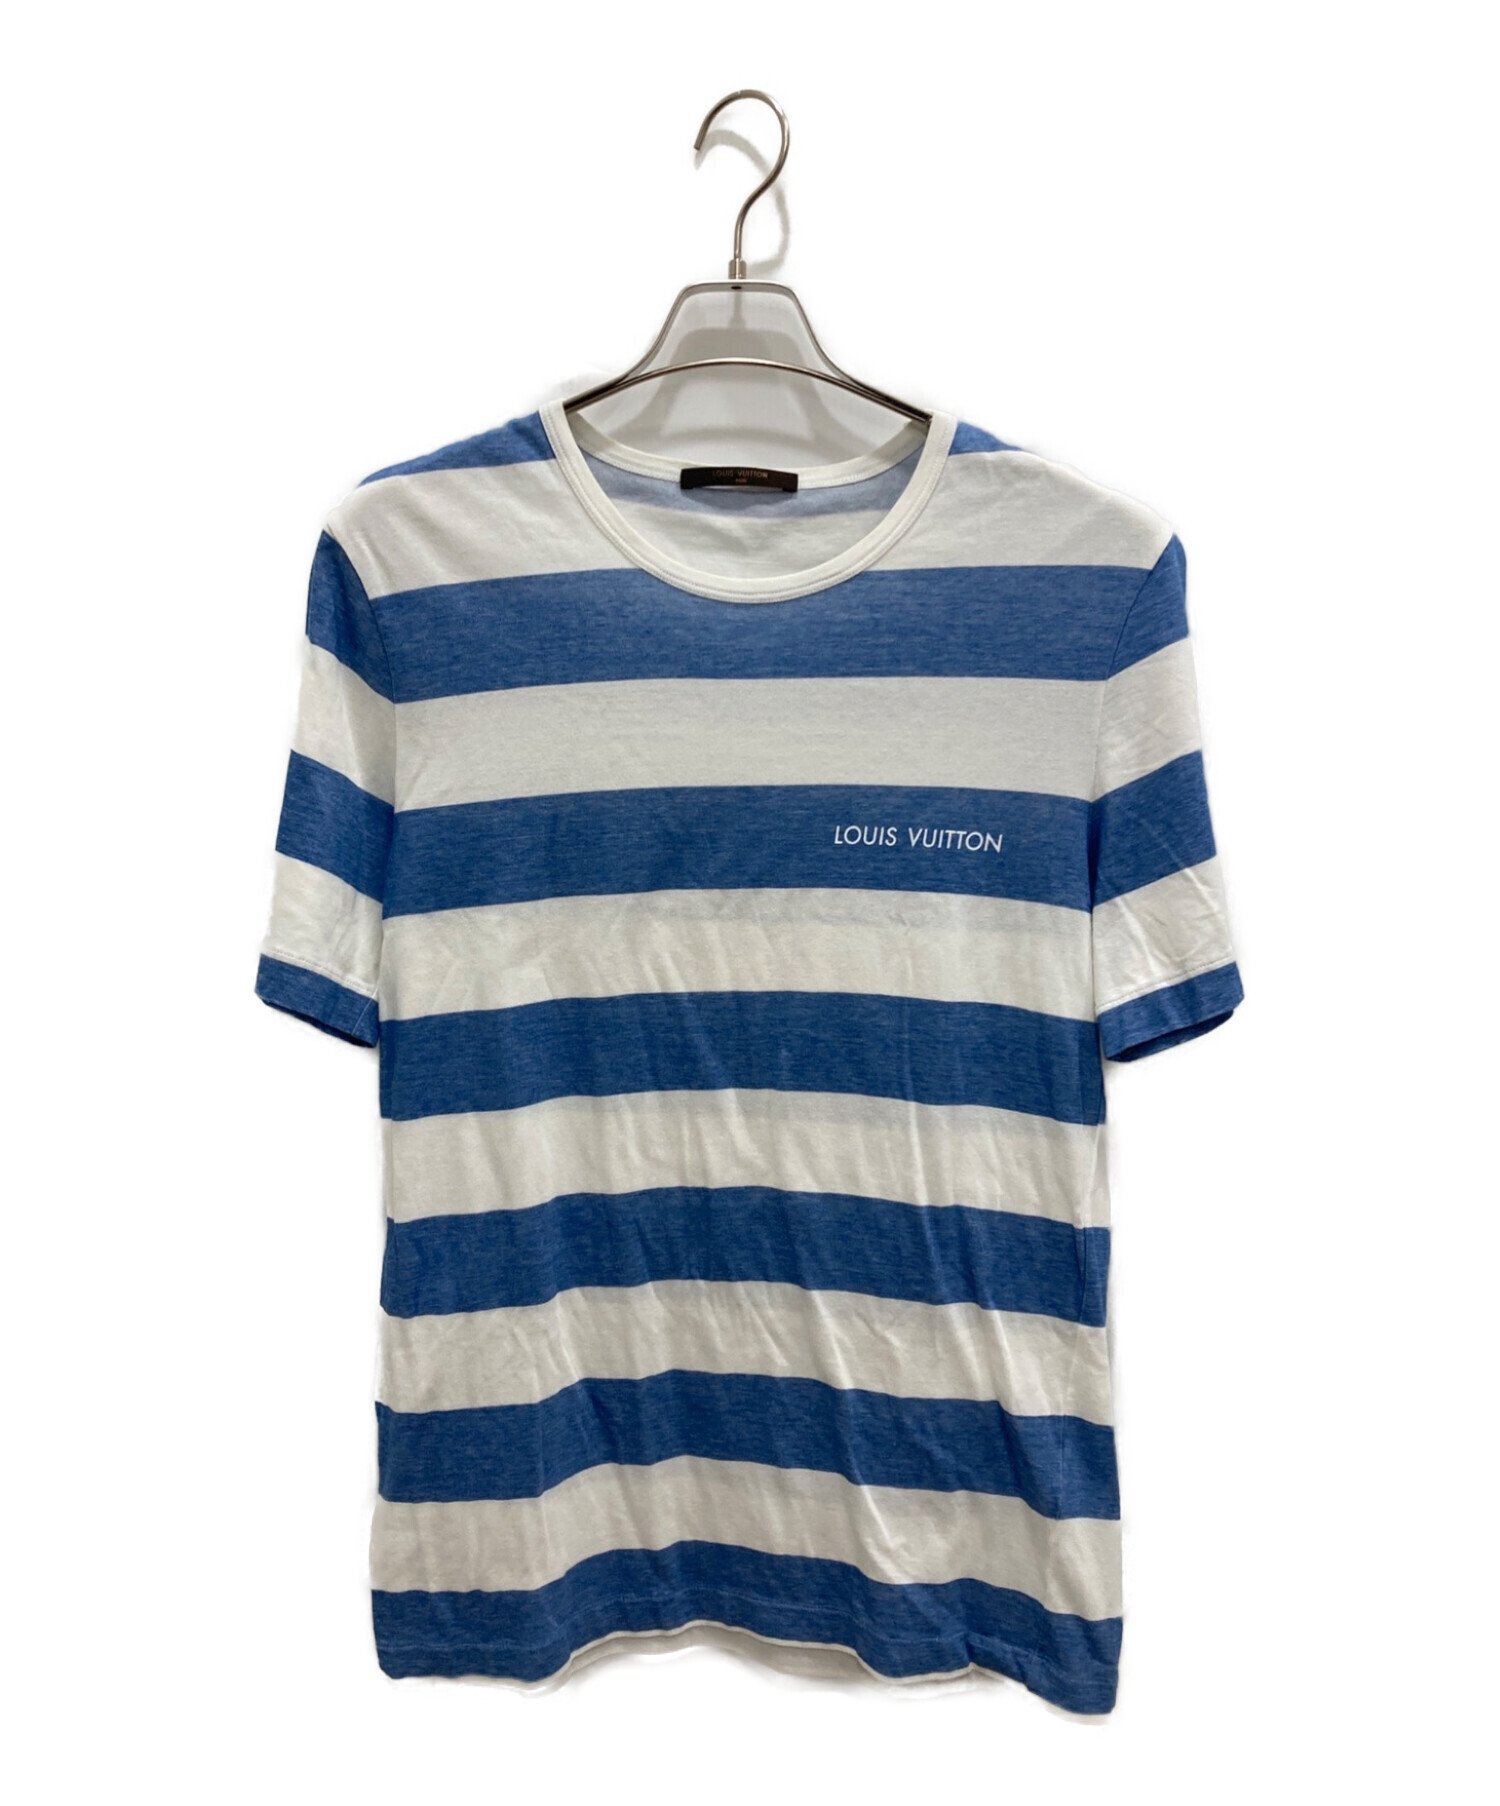 LOUIS VUITTON (ルイ ヴィトン) ボーダーTシャツ ホワイト×ブルー サイズ:XL